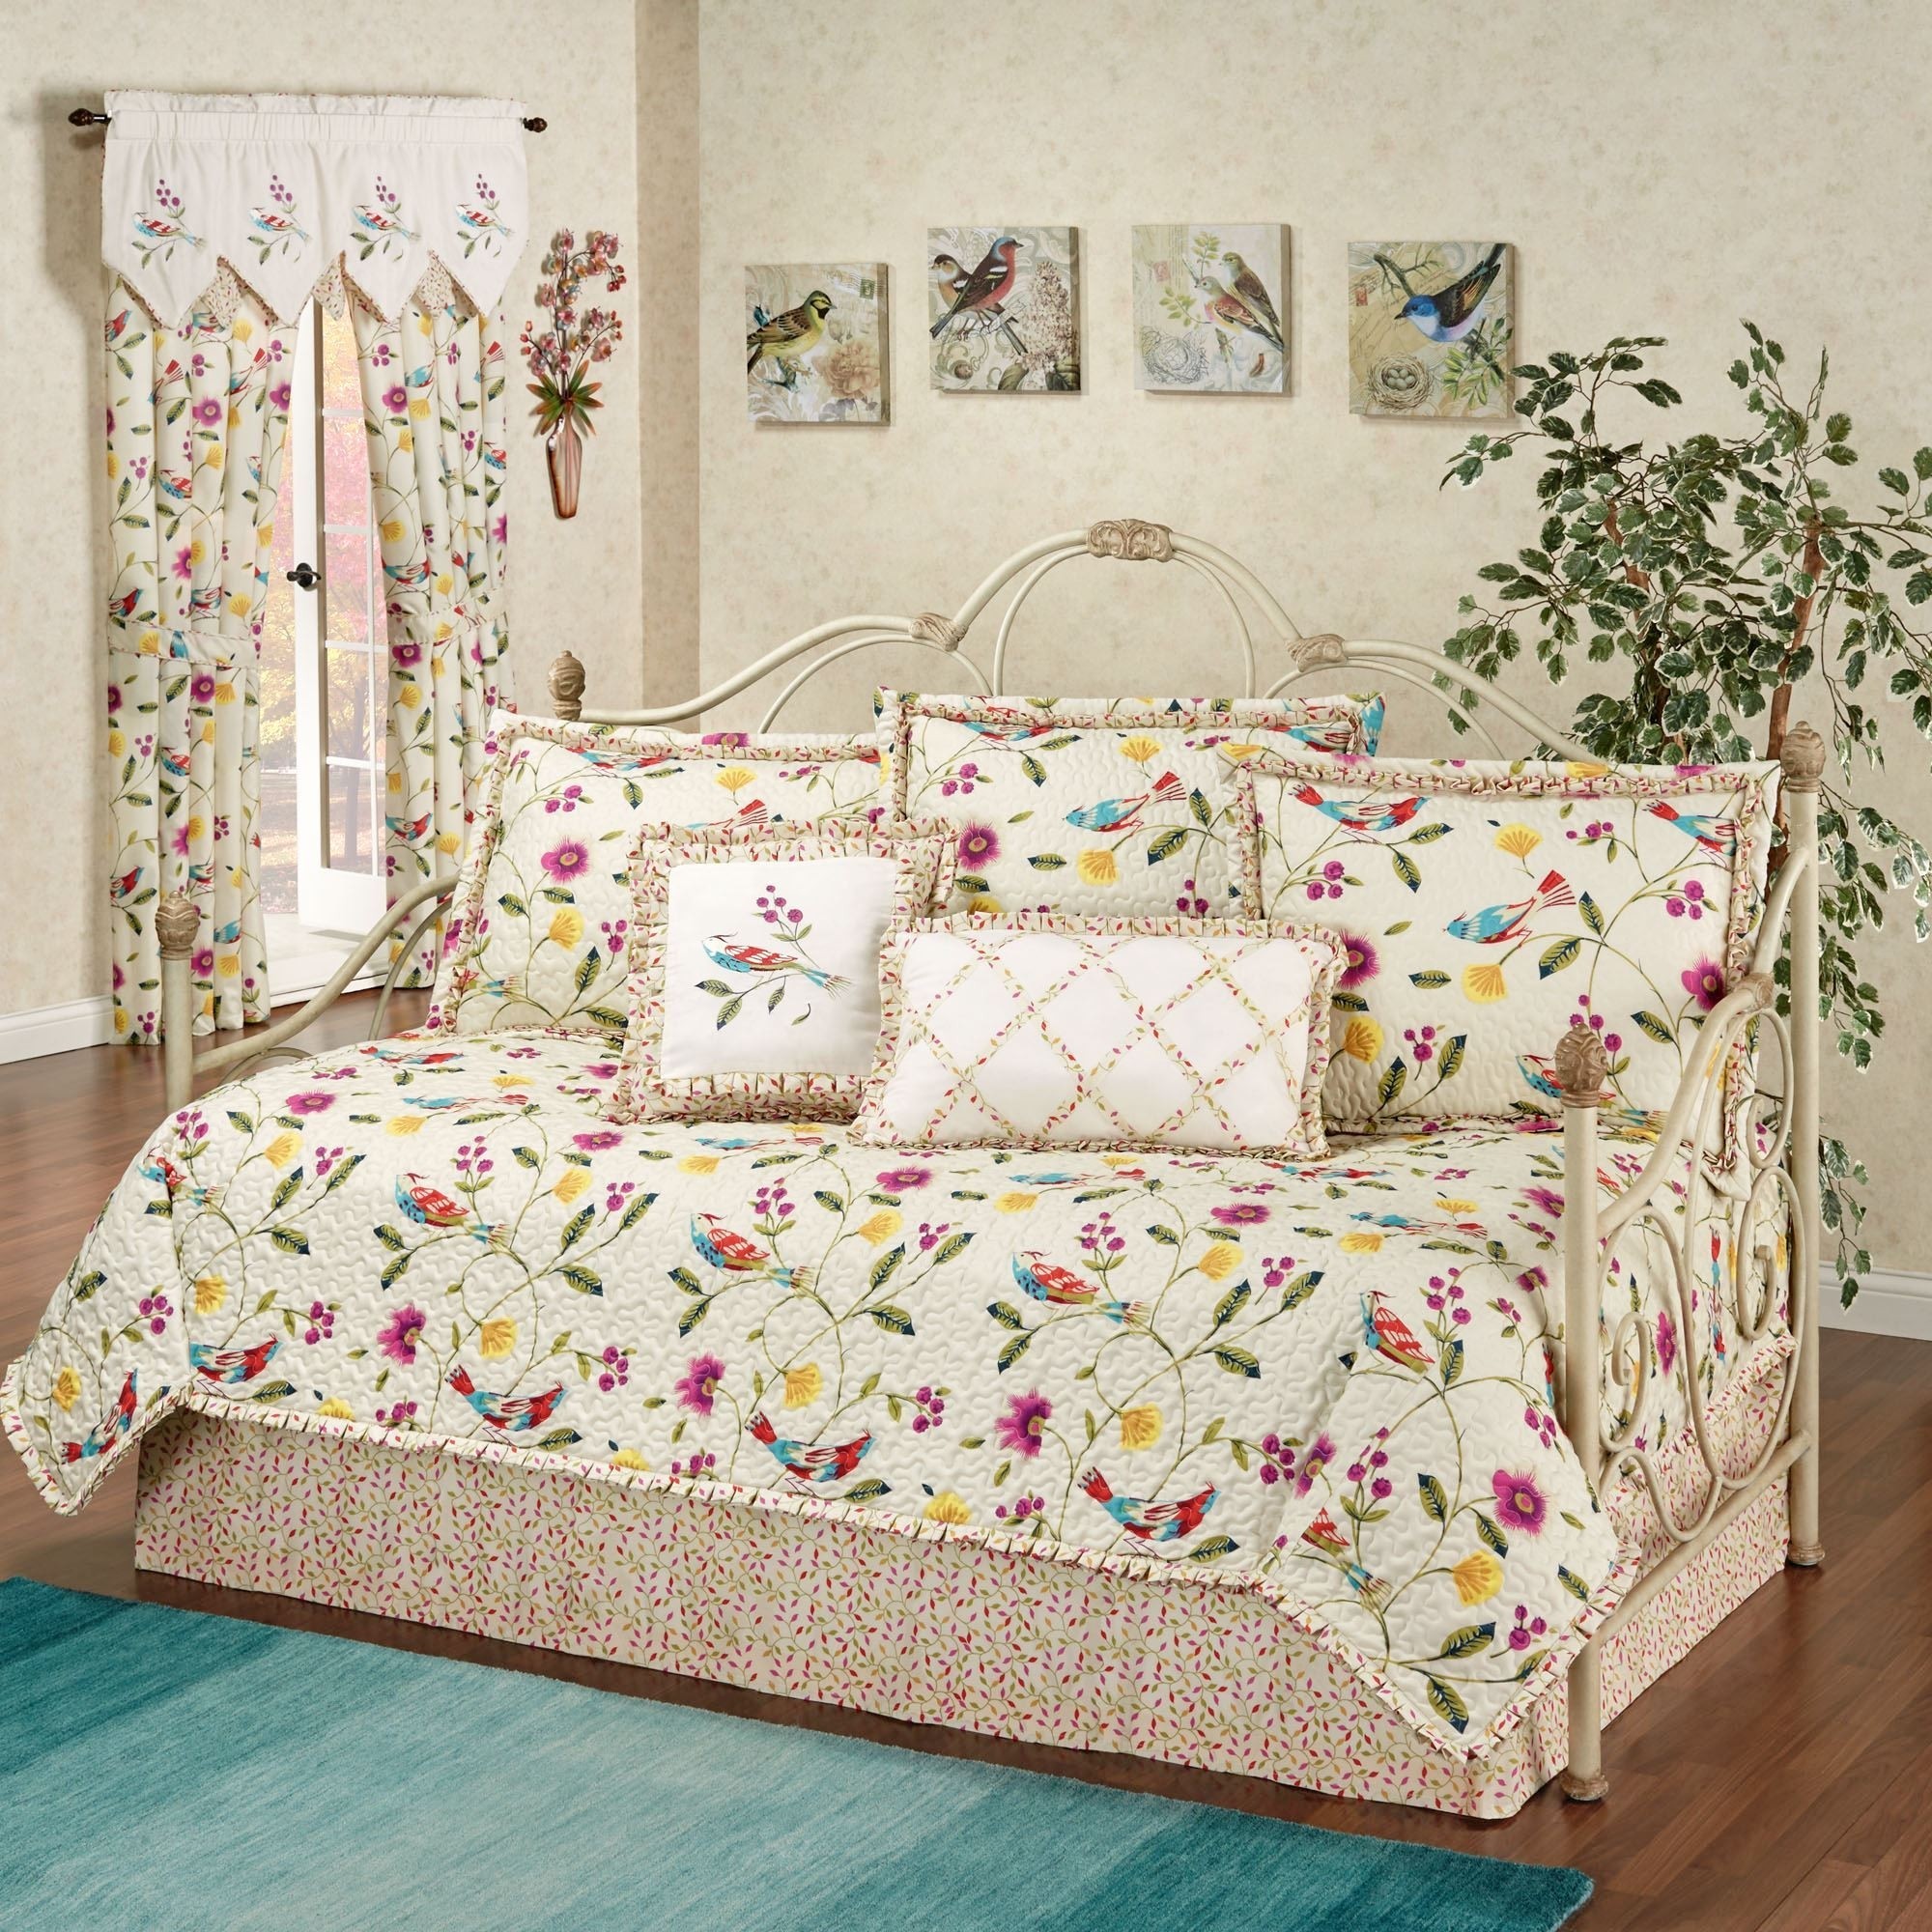 Daybed bedding sets for kids hawk haven